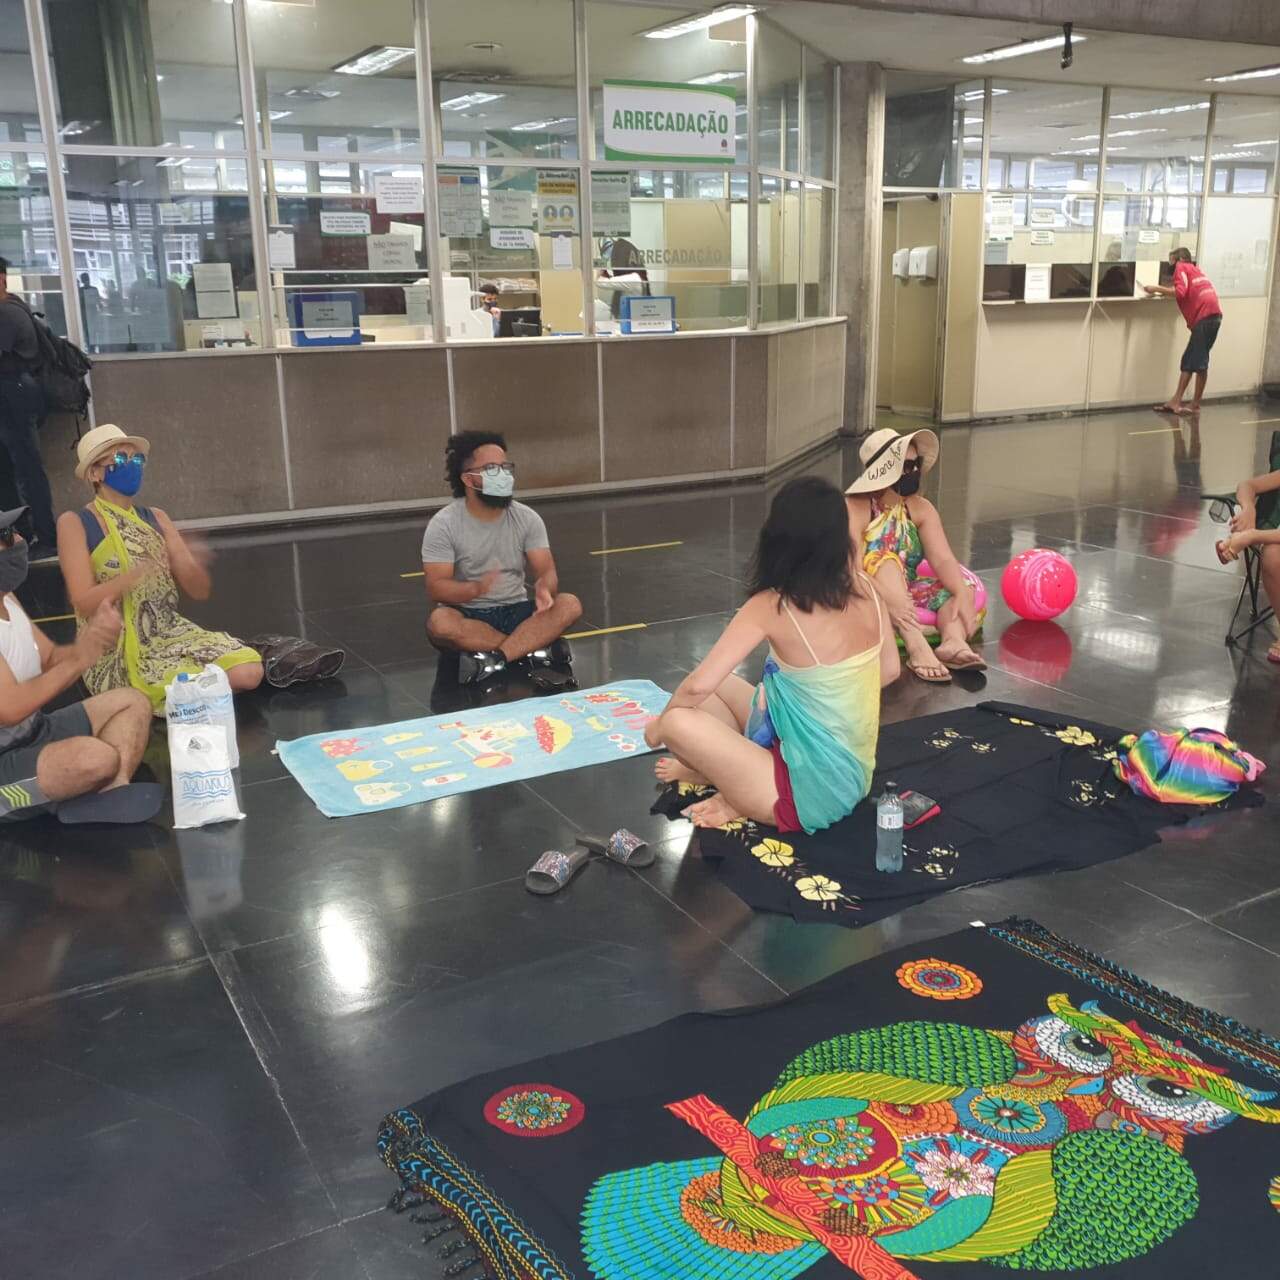 De máscara, professores 'passaram férias' na sede da prefeitura como protesto por atraso no pagamento por parte do governo 